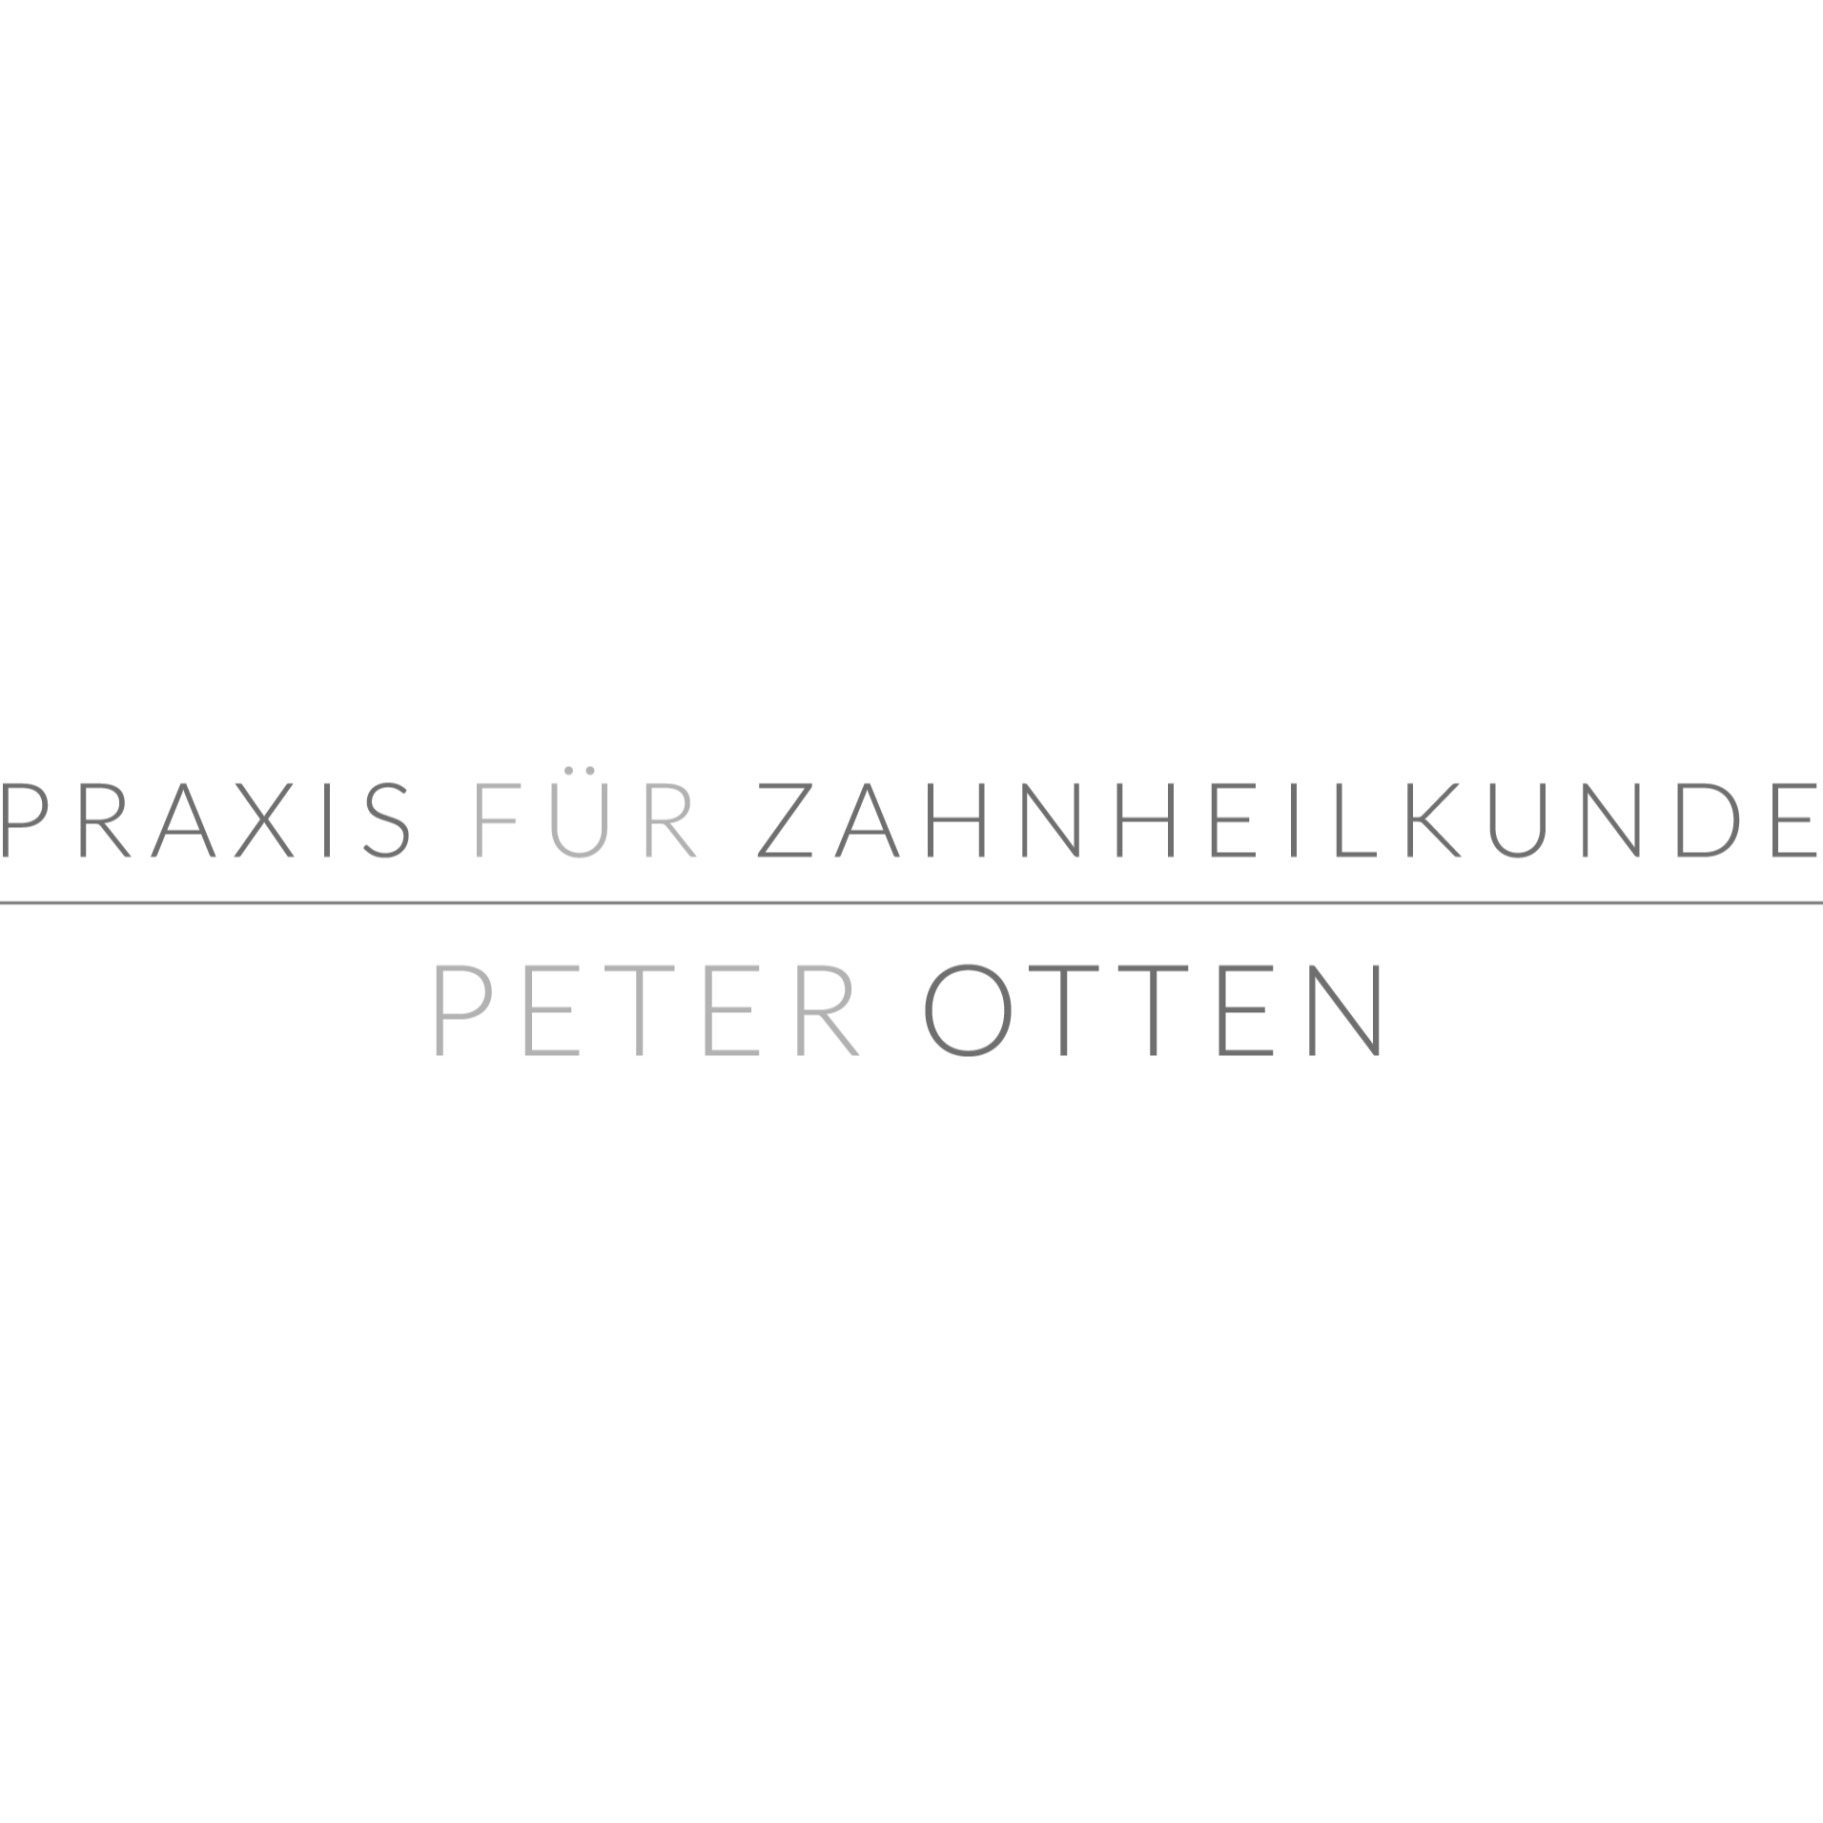 Praxis für Zahnheilkunde Peter Otten in Frankfurt am Main - Logo